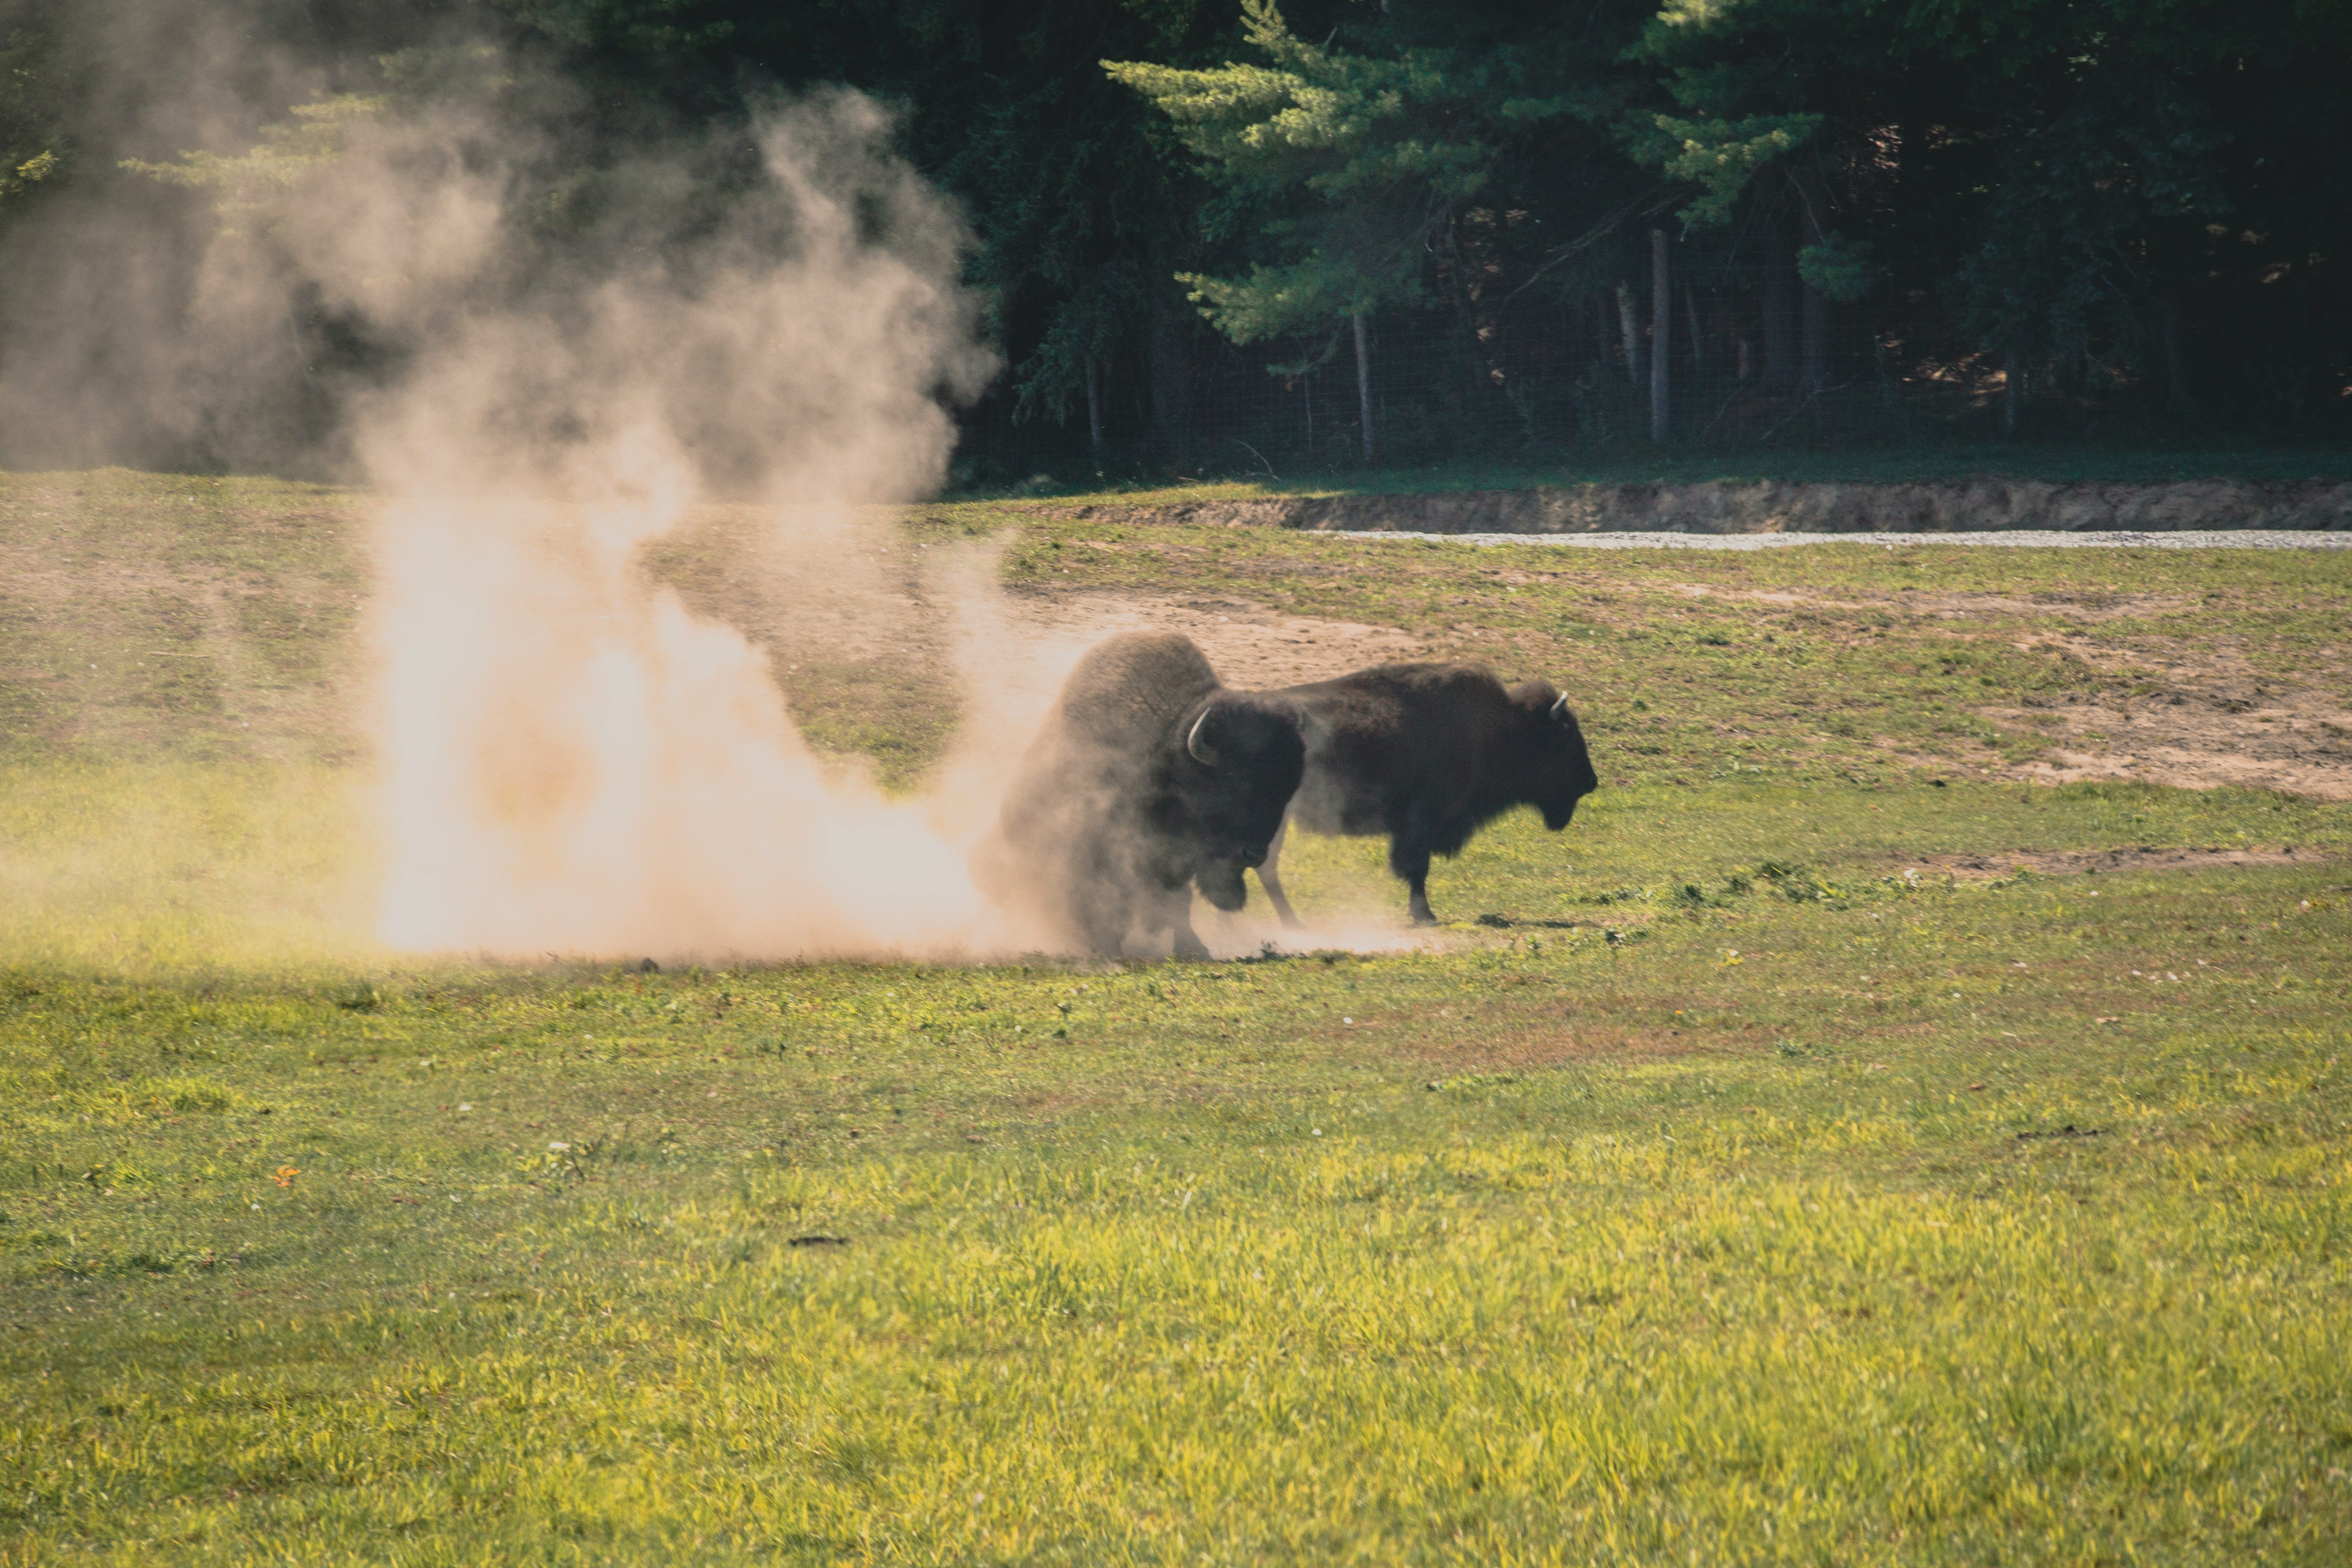 bison fighting during daytime